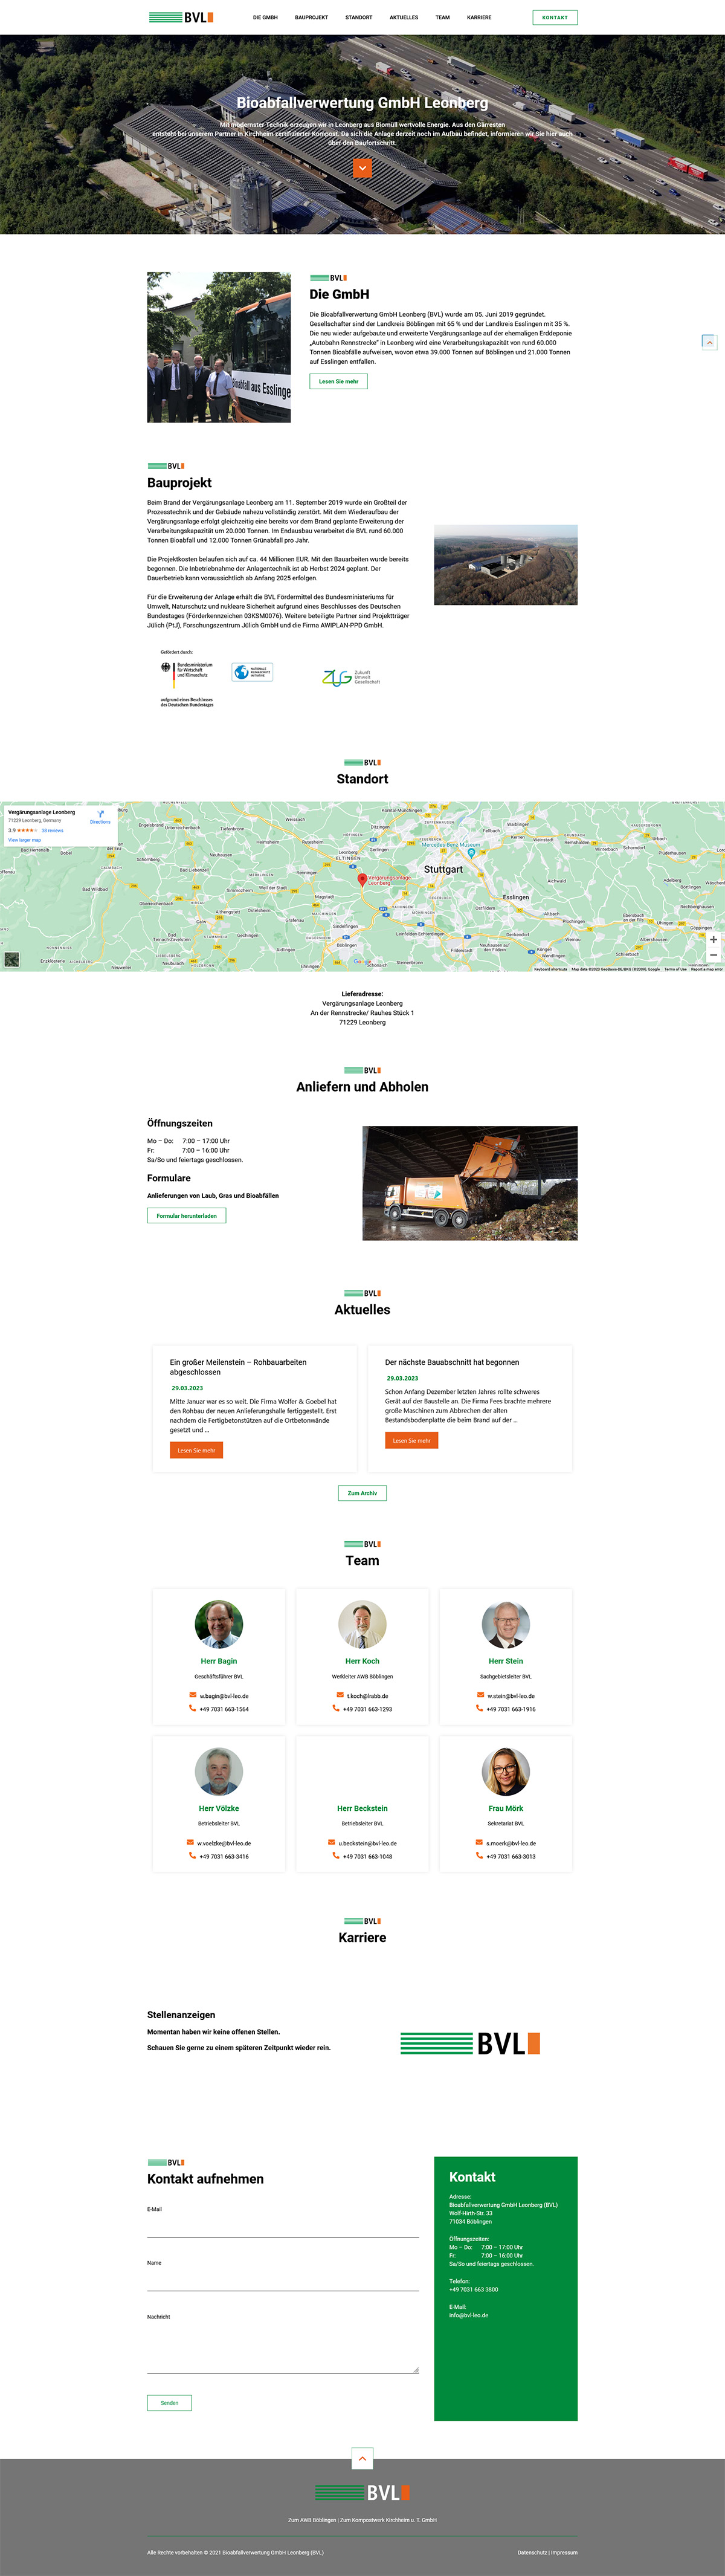 Das Bild zeigt die Webseite der Bioabfallverwertung GmbH als Desktopansicht.